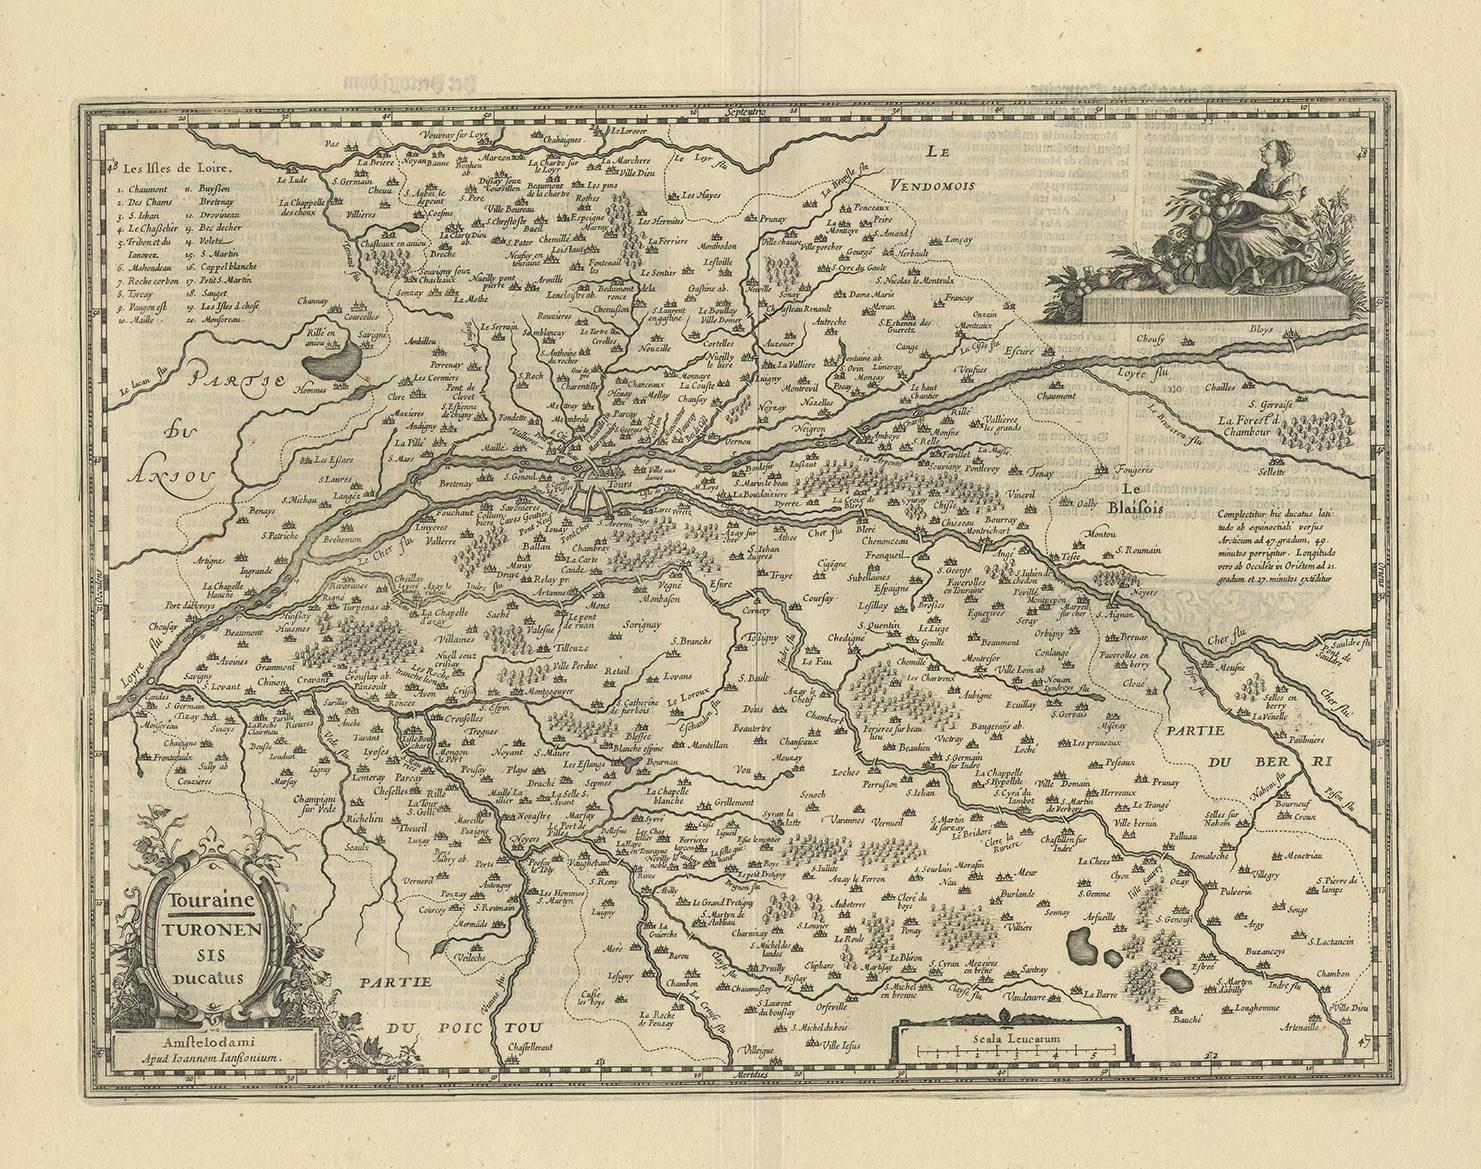 Antike Karte von Frankreich mit dem Titel 'Touraine - Turonensis Ducatus'. Dekorative Karte der Region Touraine, Frankreich. Sie zeigt die Städte Tours, Amboise und andere. Herausgegeben von J. Janssonius.